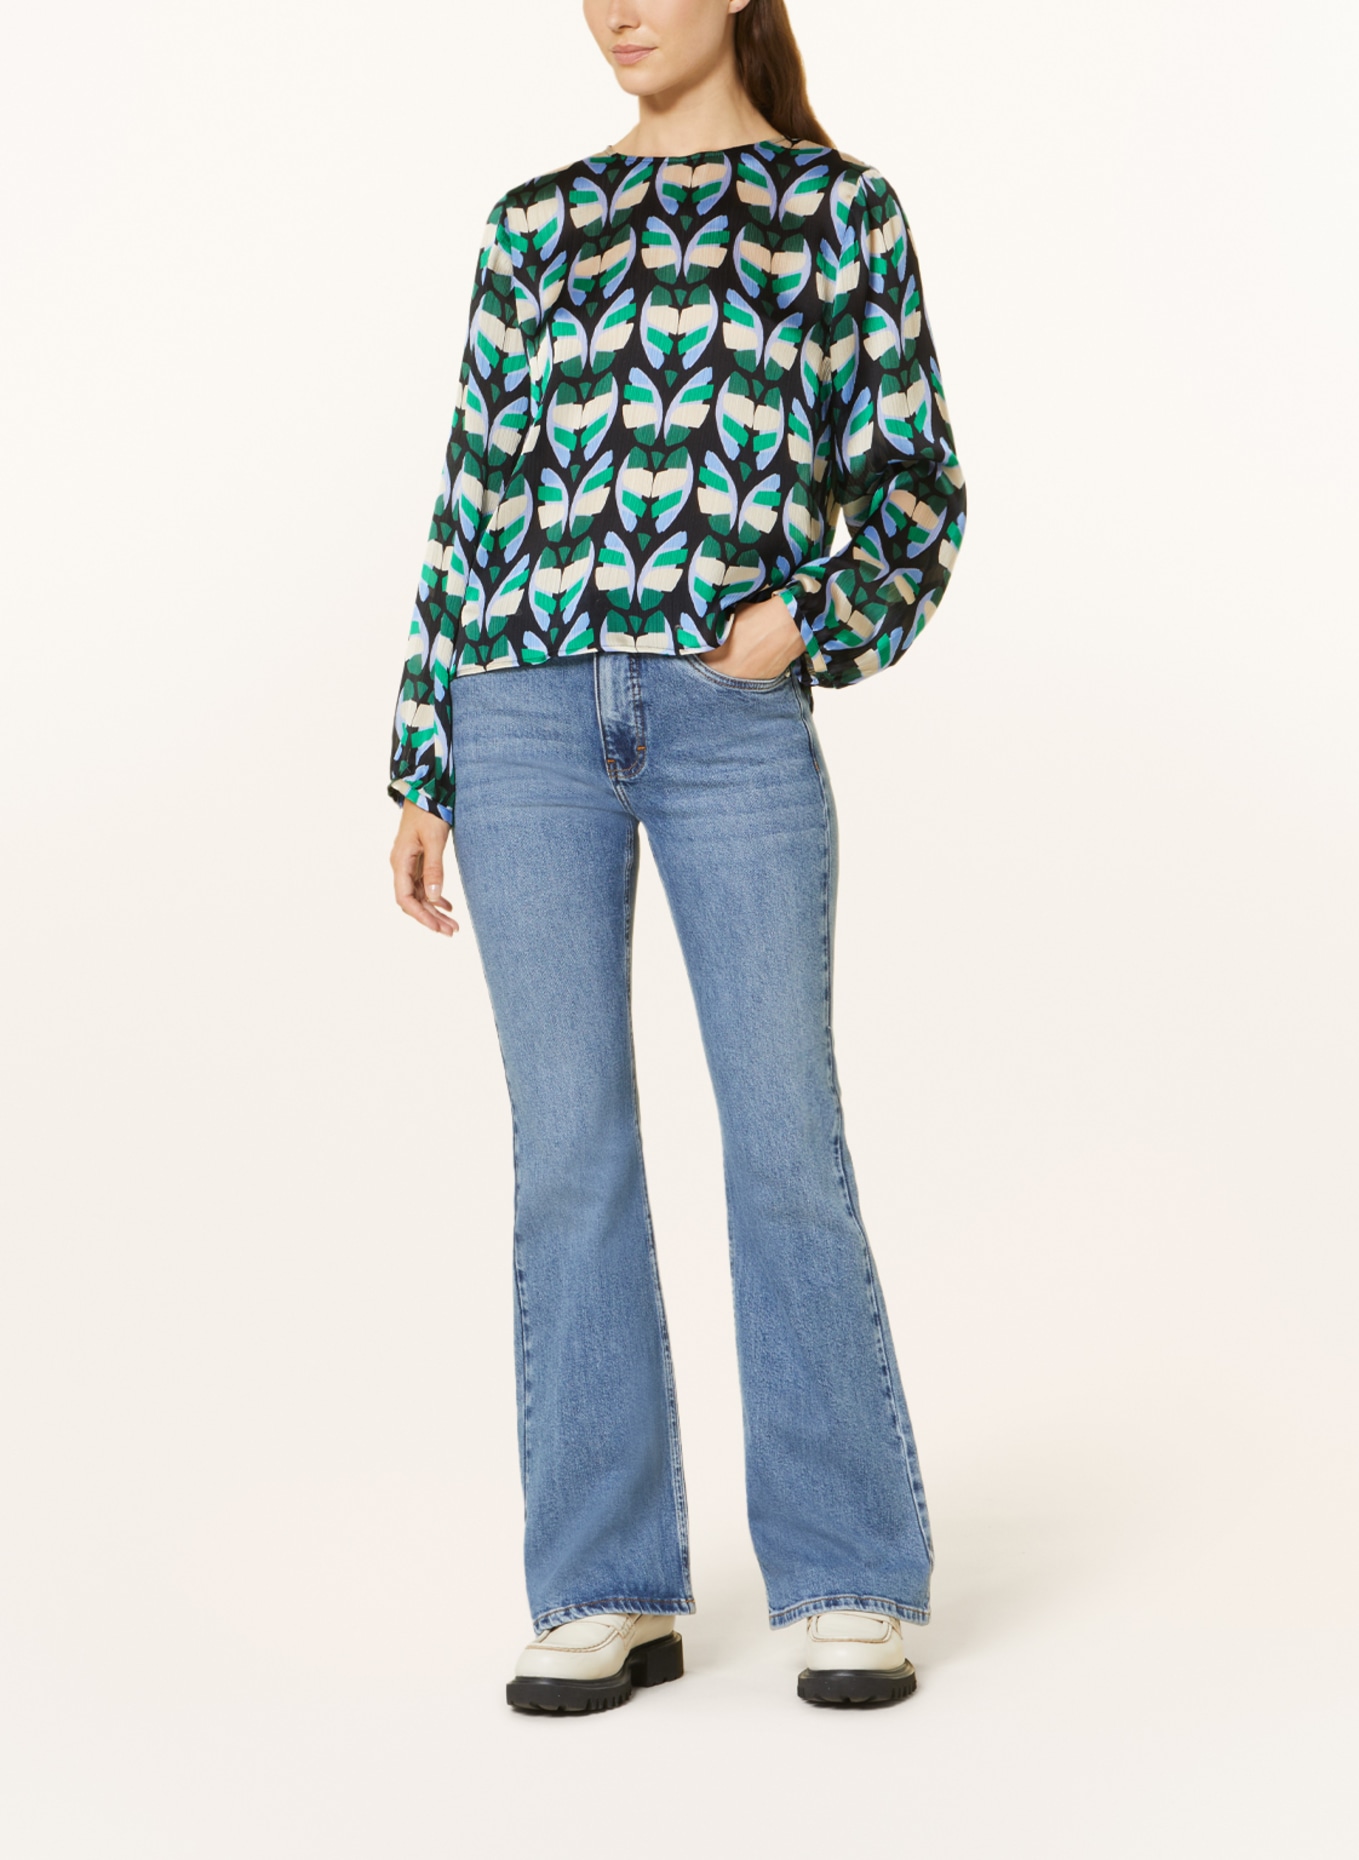 CINQUE Shirt blouse CITIZIA, Color: BLACK/ LIGHT BLUE/ GREEN (Image 2)